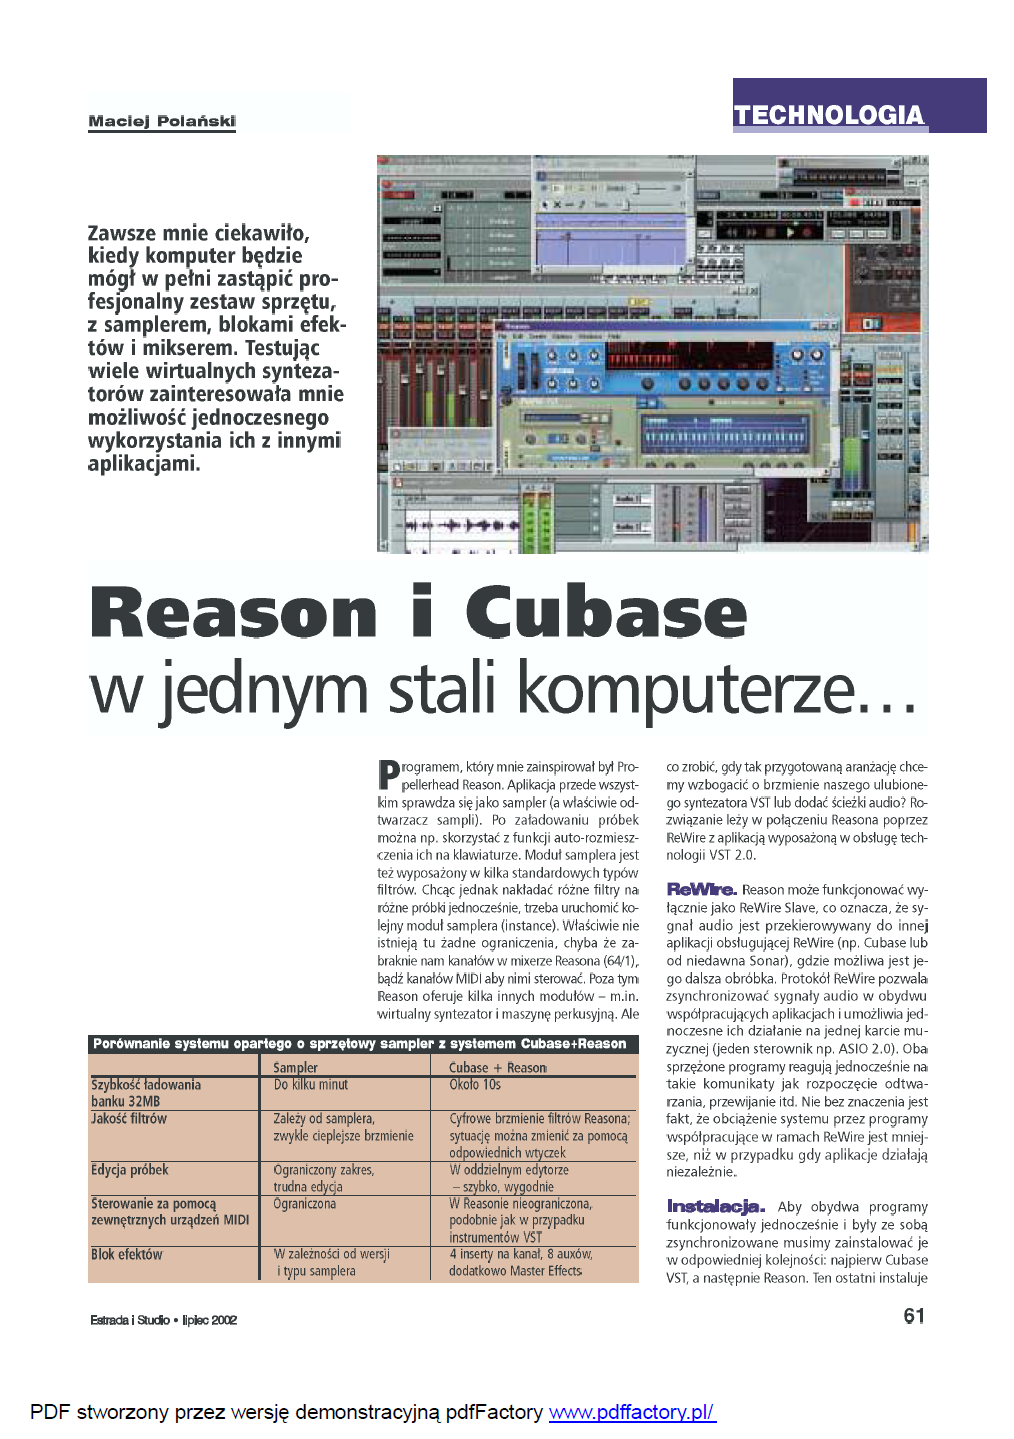 2002 07 ReWire - Reason i Cubase w jednym stali komputerze (1)